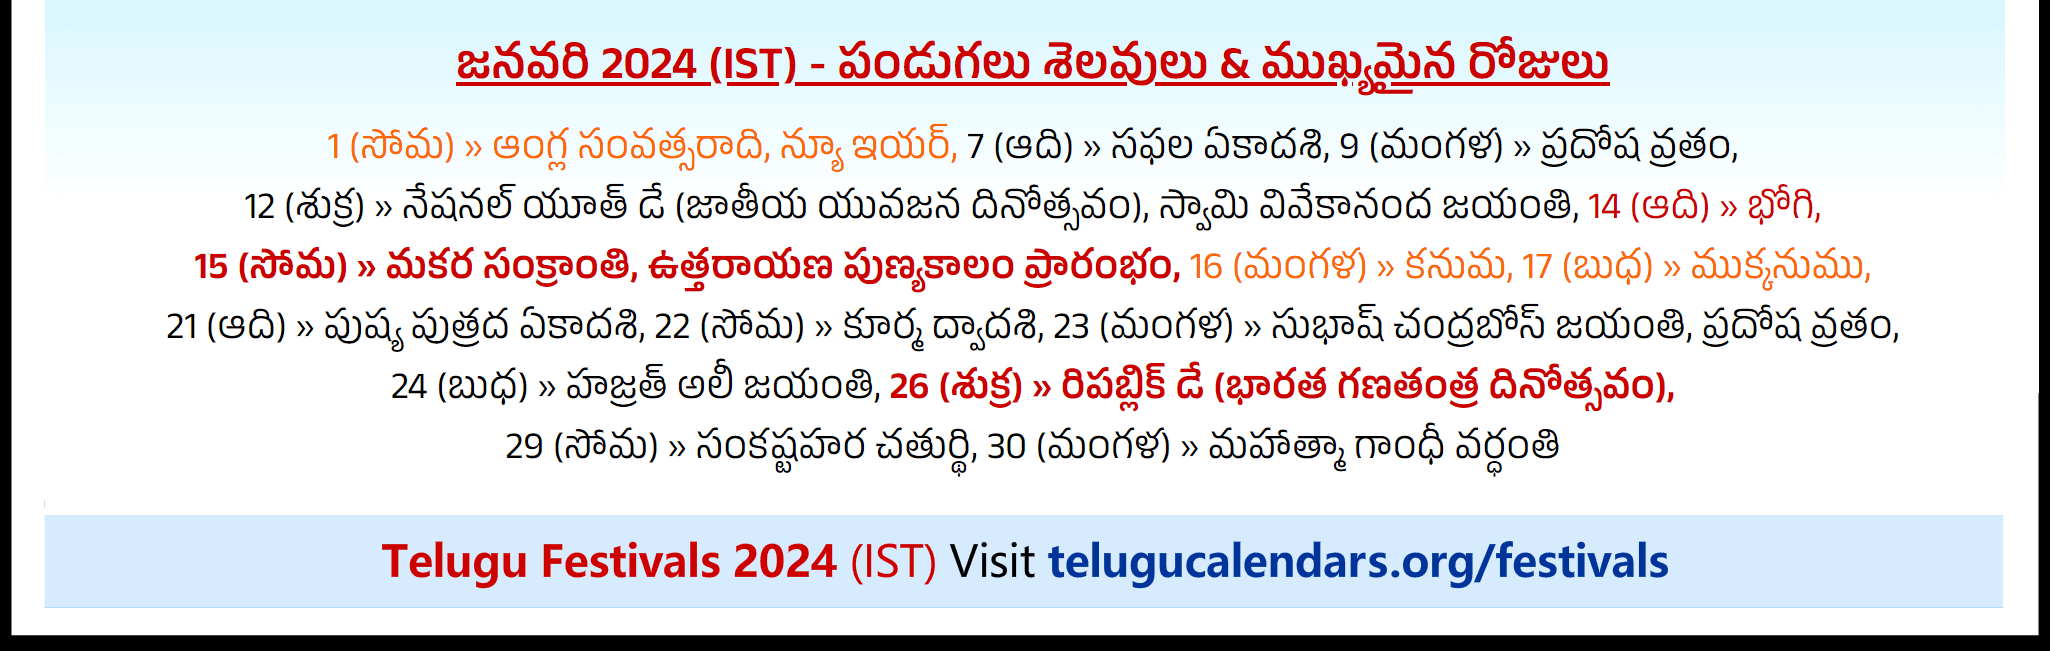 Telugu Festivals 2024 January Los Angeles